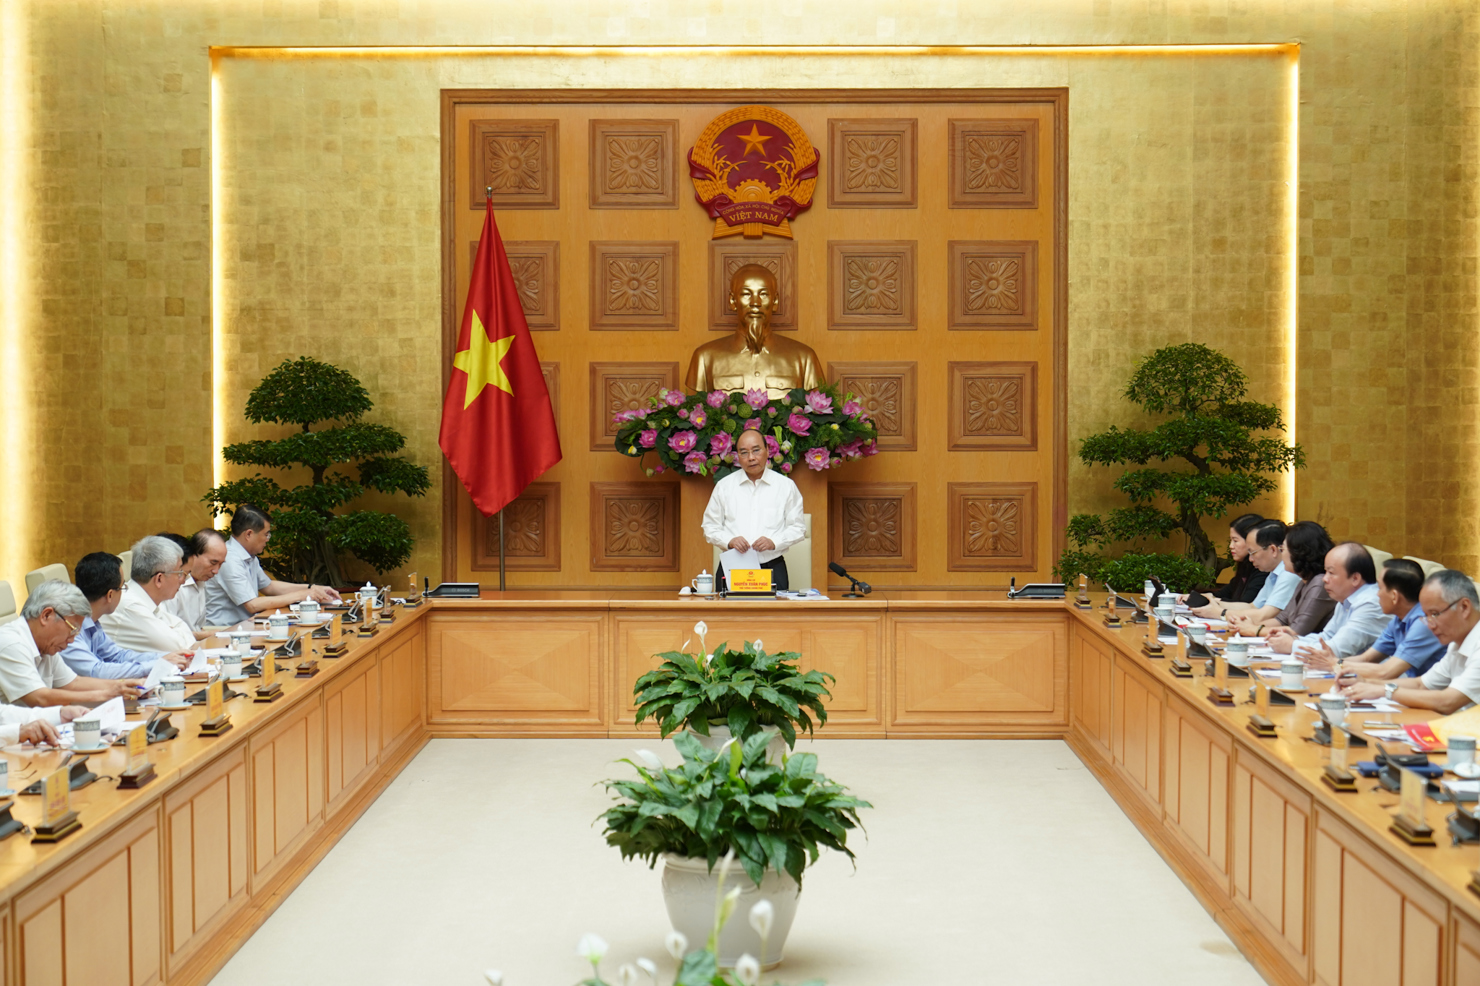 Thủ tướng Nguyễn Xuân Phúc phát biểu kết luận cuộc họp. Ảnh: VGP/Quang Hiếu